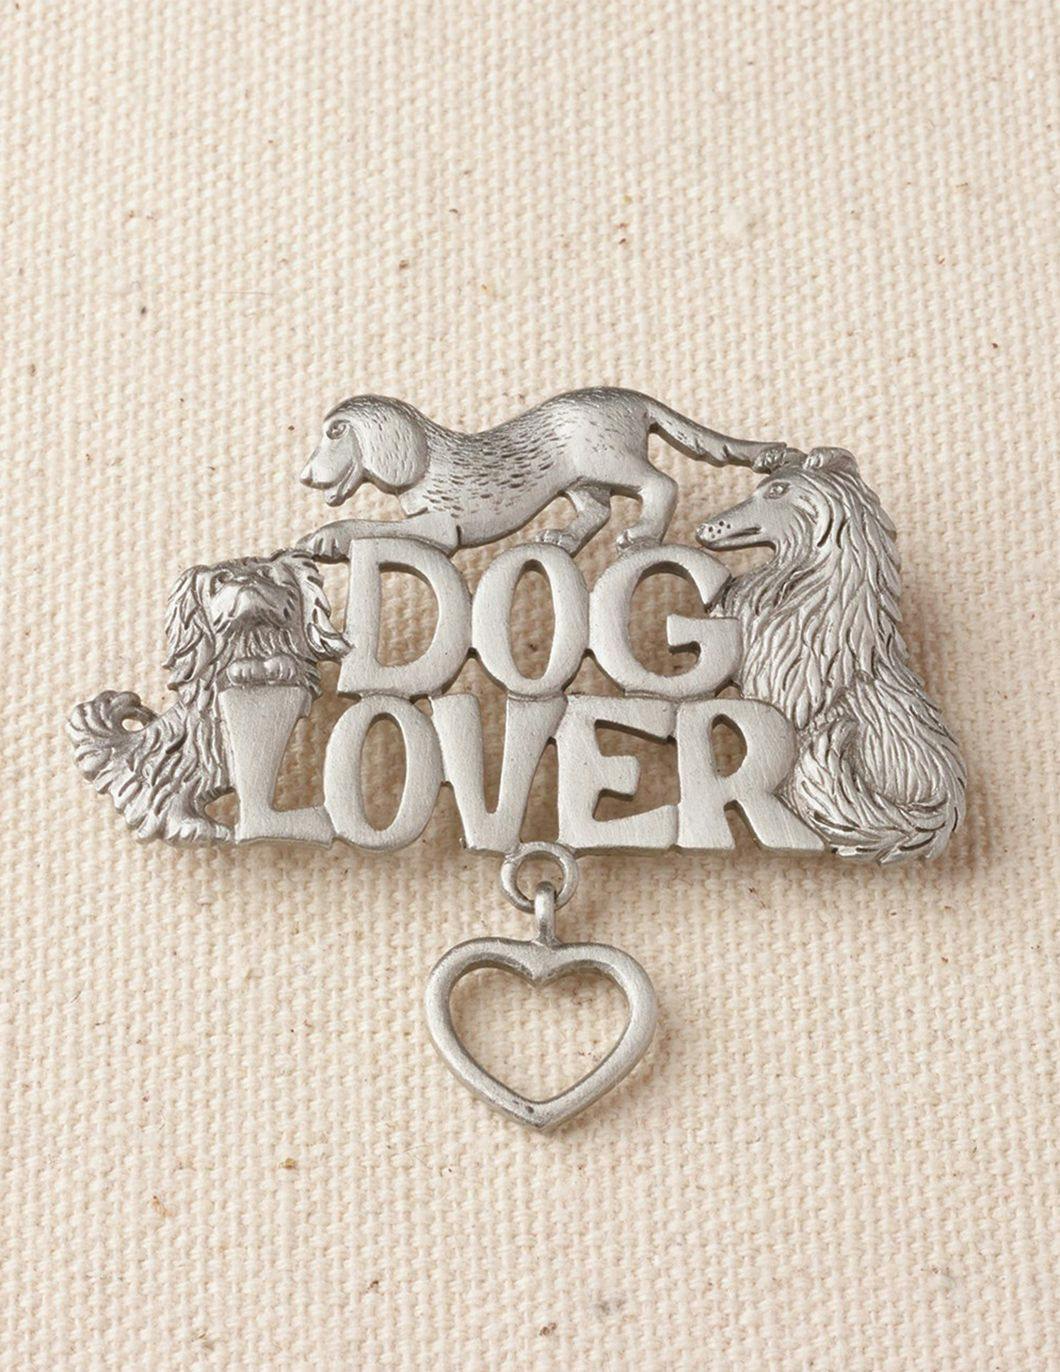 pewter-dog-lovers-pin